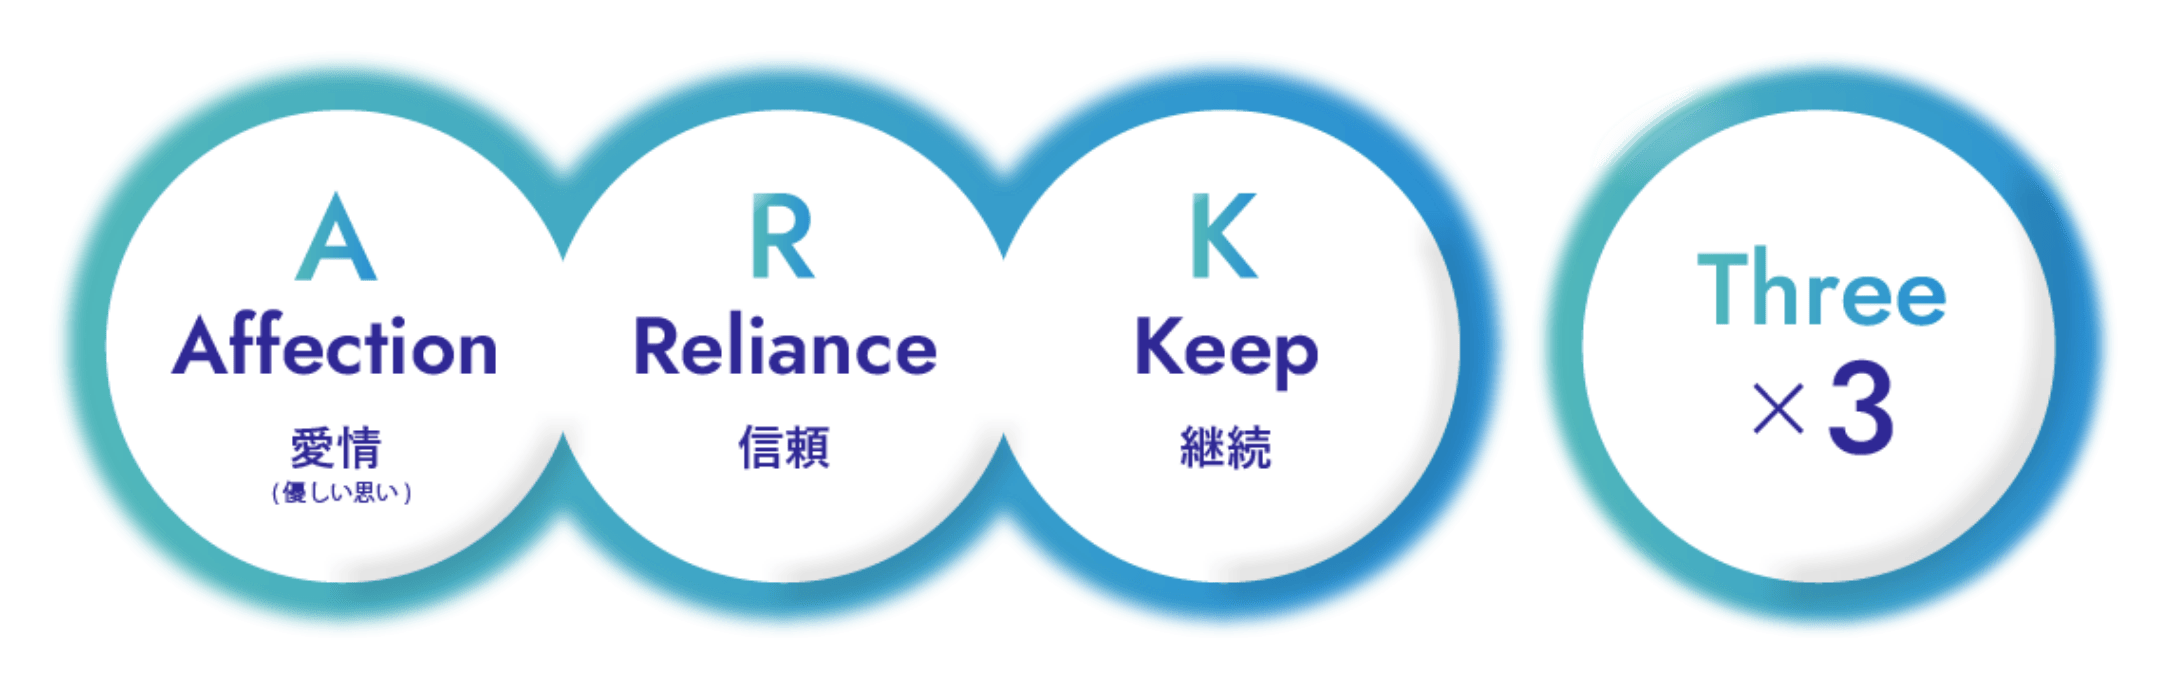 くっついた３つの円と、離れた１つの円が横並びに描かれていて、それぞれに文字が書かれている。左から、「A: Affection 愛情（優しい思い）」「R: Reliance 信頼」「K: Keep 継続」「Three ×3」